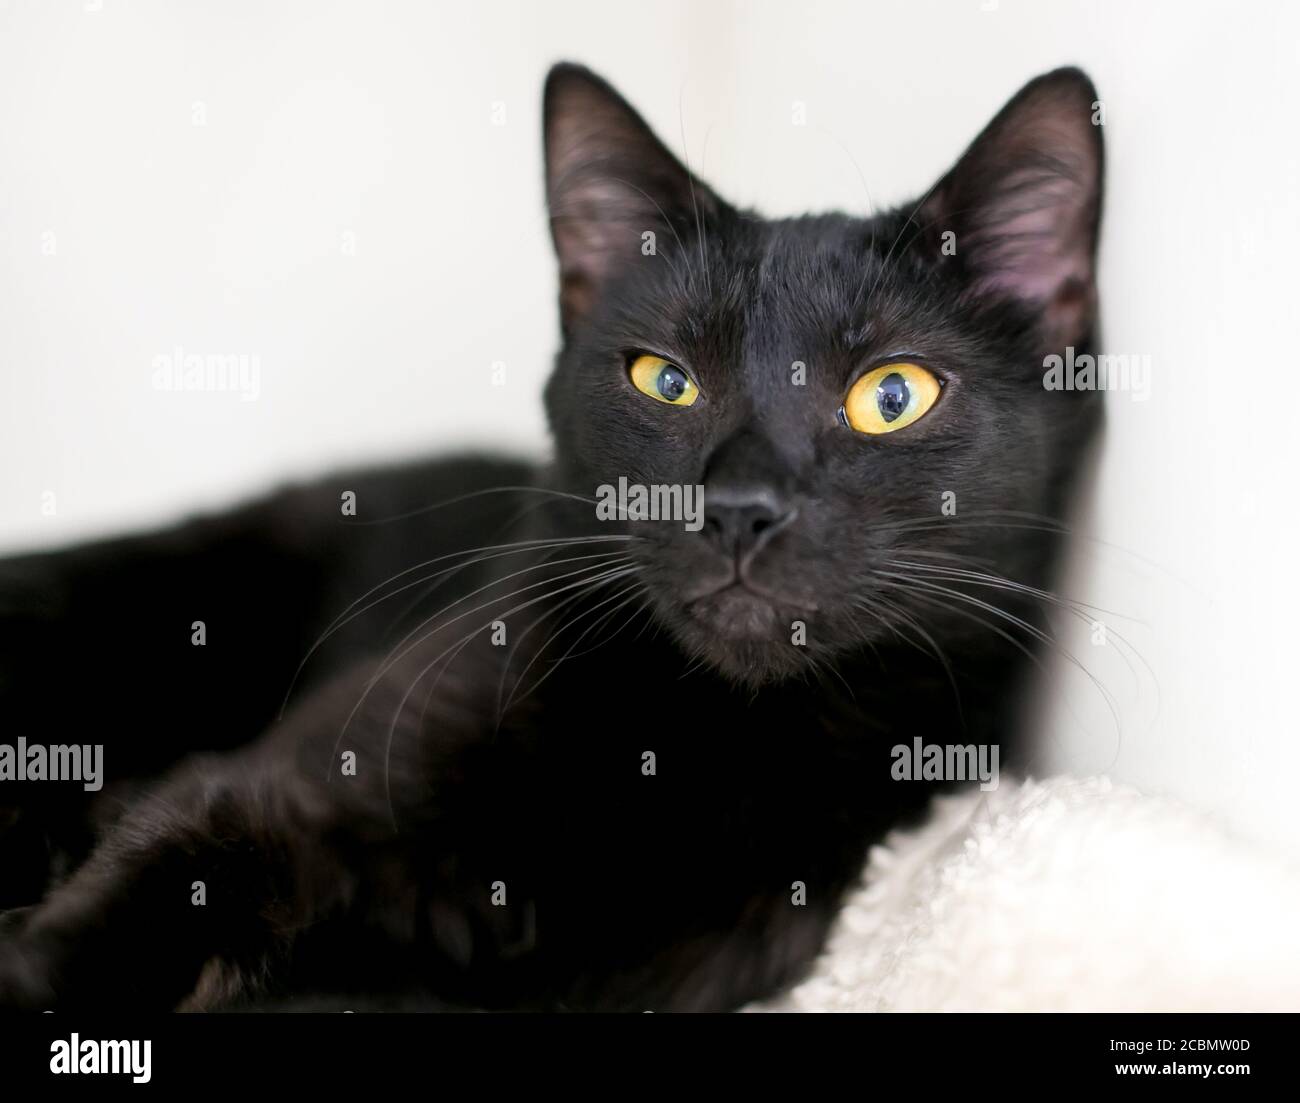 Un chat court noir avec des yeux jaunes regardant latéralement la caméra Banque D'Images